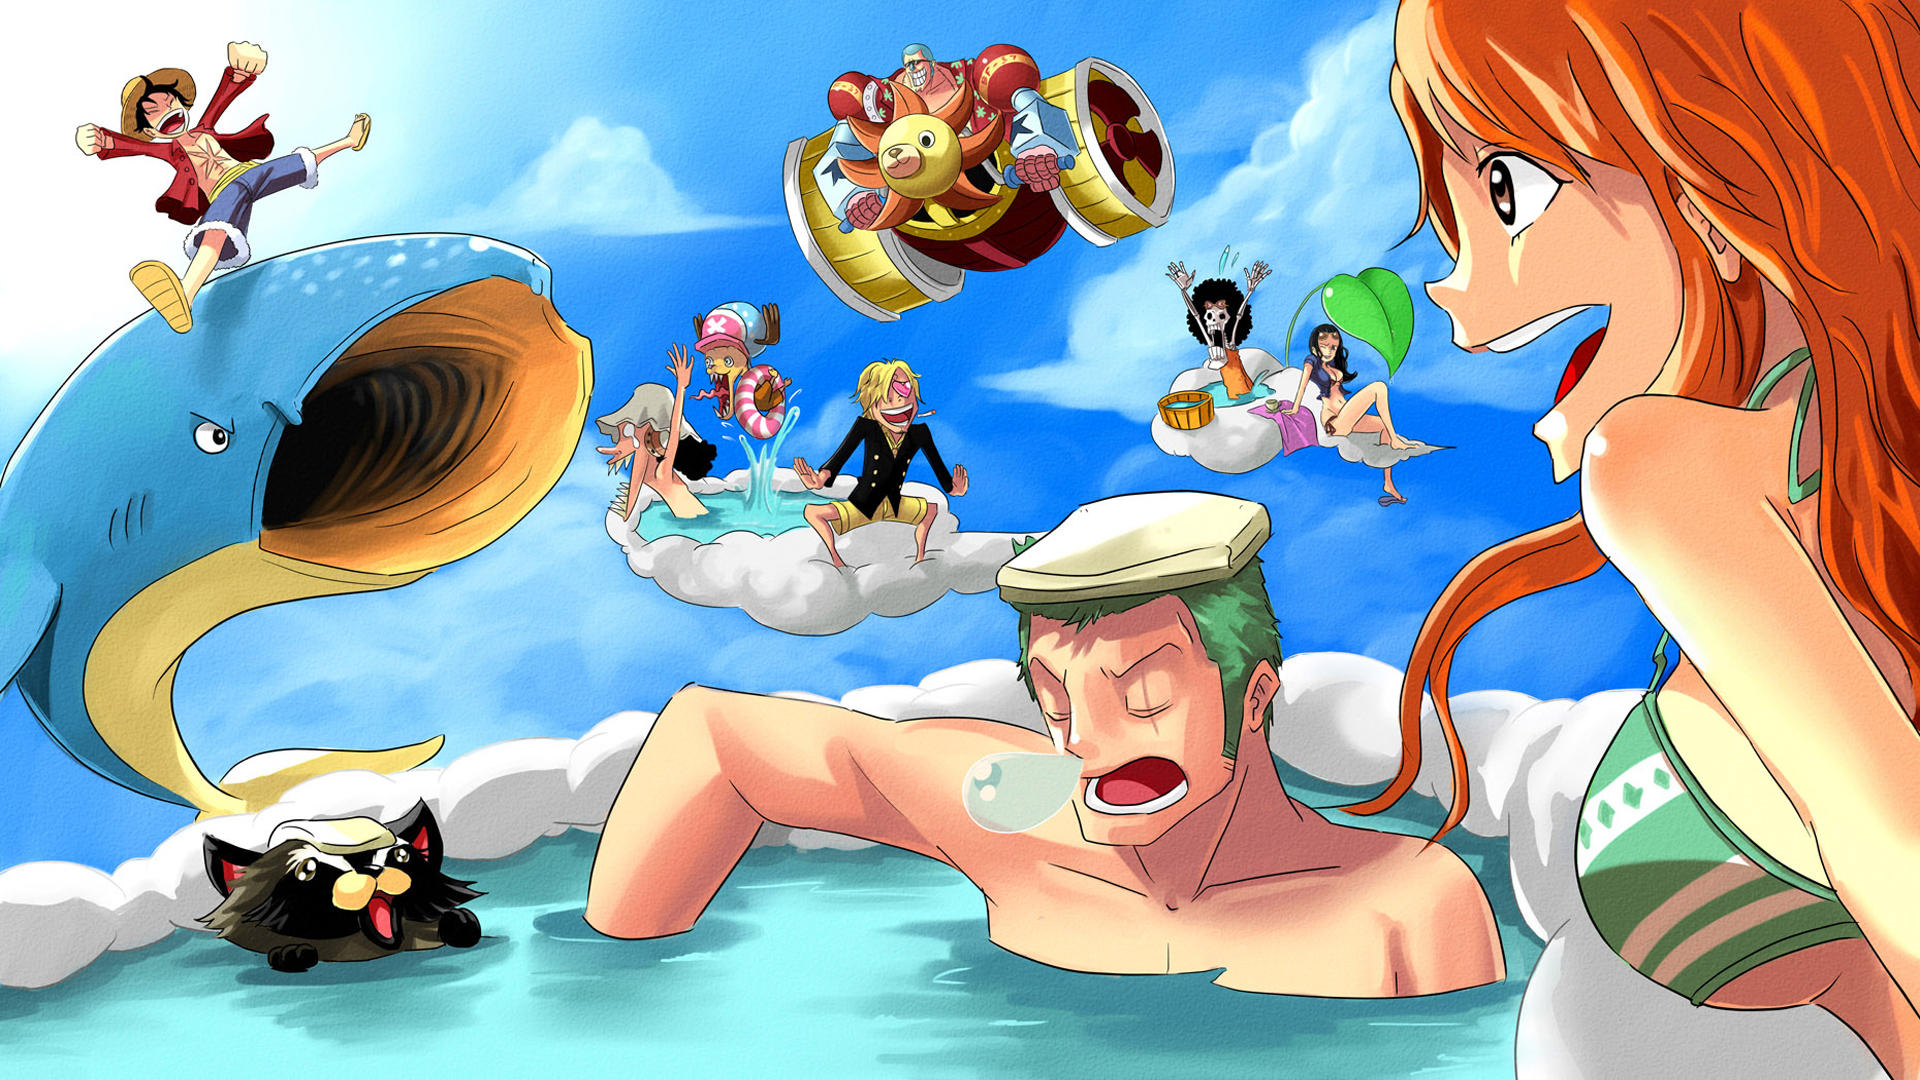 Chơi trò chơi bài One Piece là cách tuyệt vời để thử thách khả năng tư duy và chiến lược của bạn. Với các bài có các nhân vật yêu thích của fan One Piece, trò chơi bài One Piece là cách tuyệt vời để tham gia vào thế giới ảo của series.